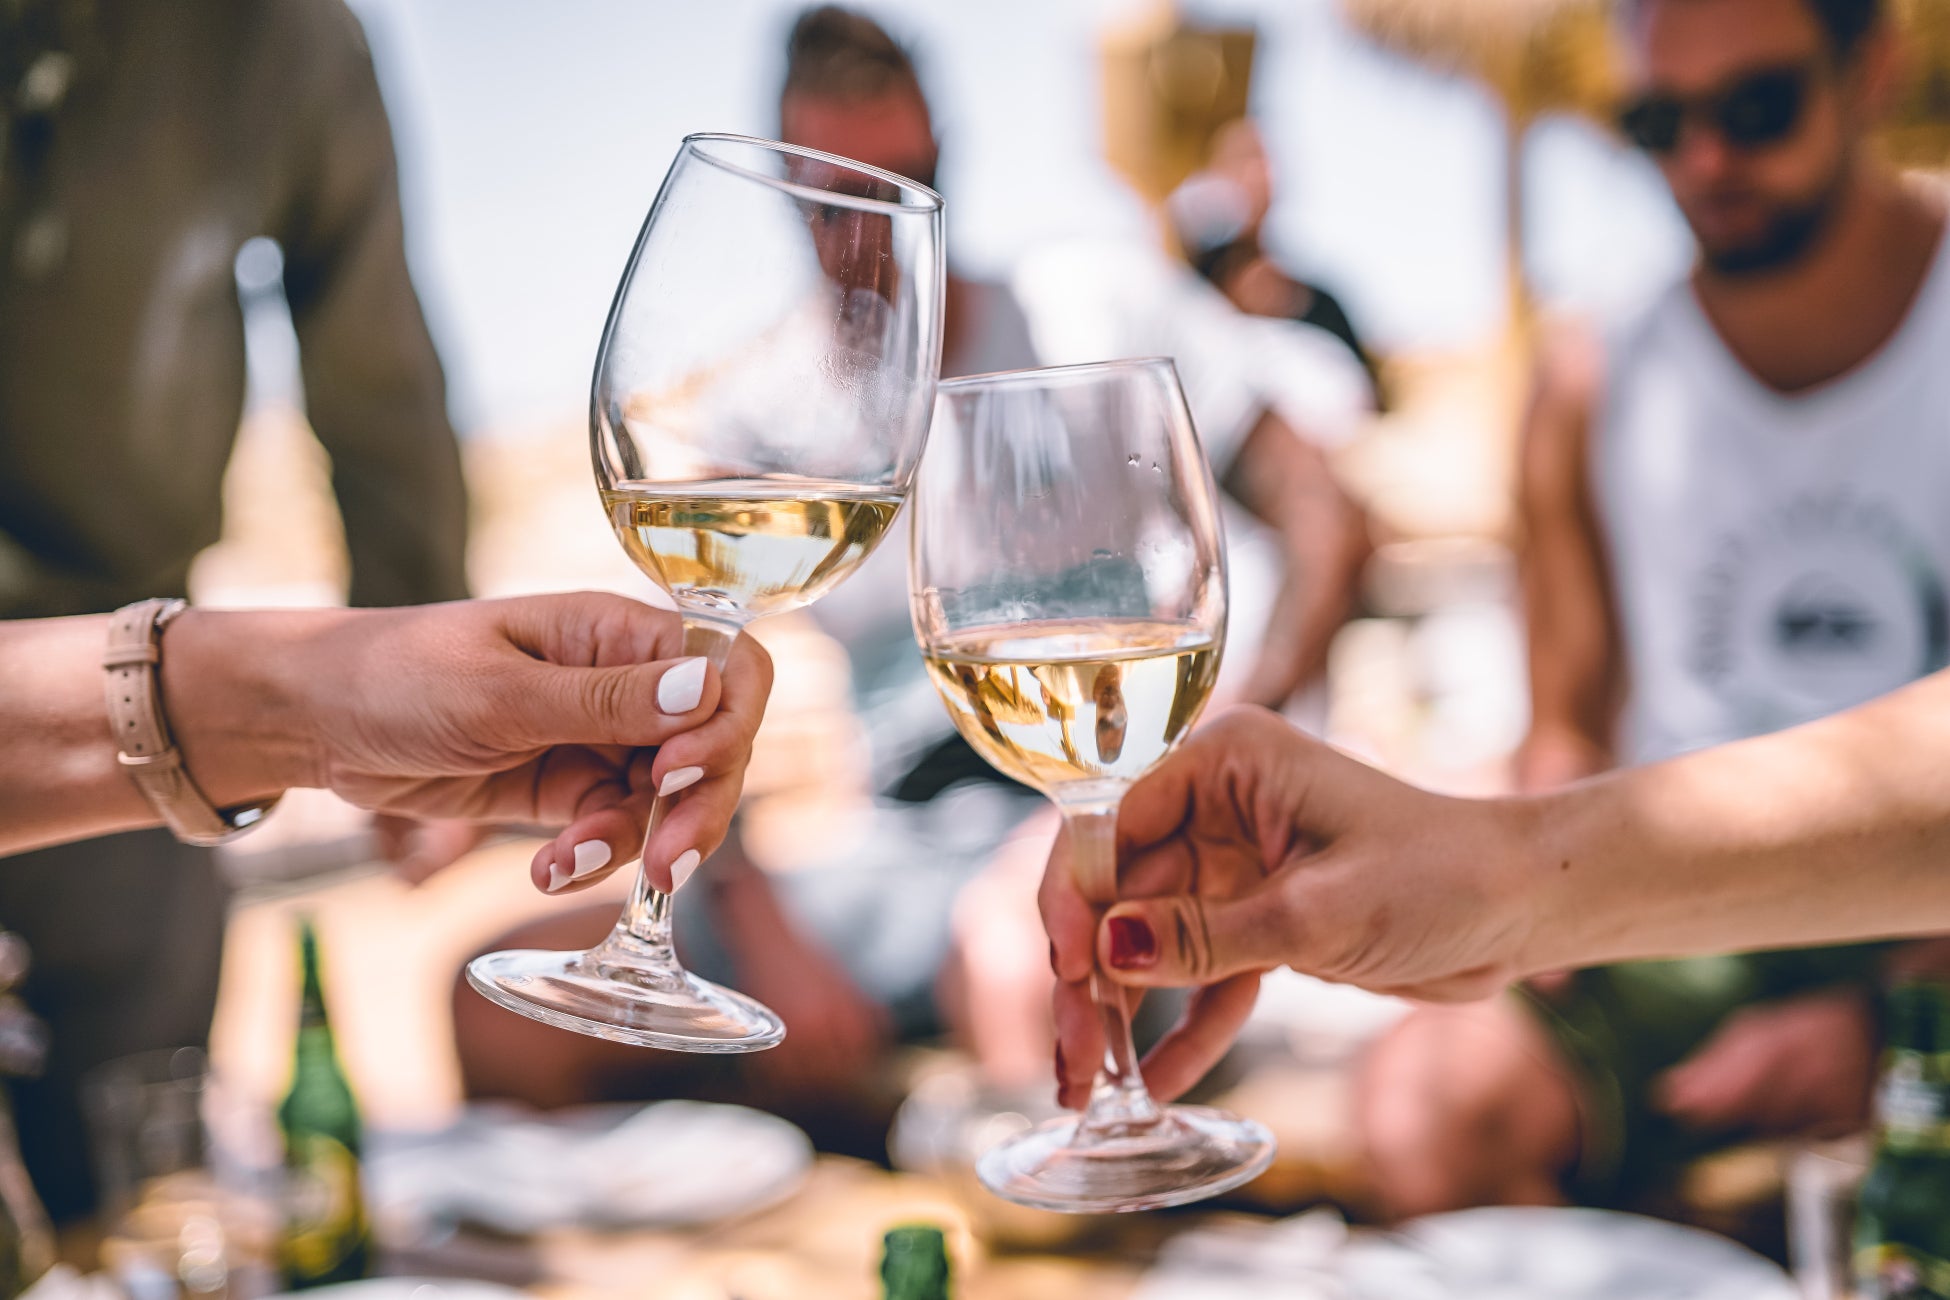 世界シェア0.3%、”世界で最も知られていない優れたワイン産地”と呼ばれているカナダの厳選ワインと共に、日本のカナダワイン輸入販売のパイオニアであるHeavenly VinesがMakuake初登場のサブ画像11